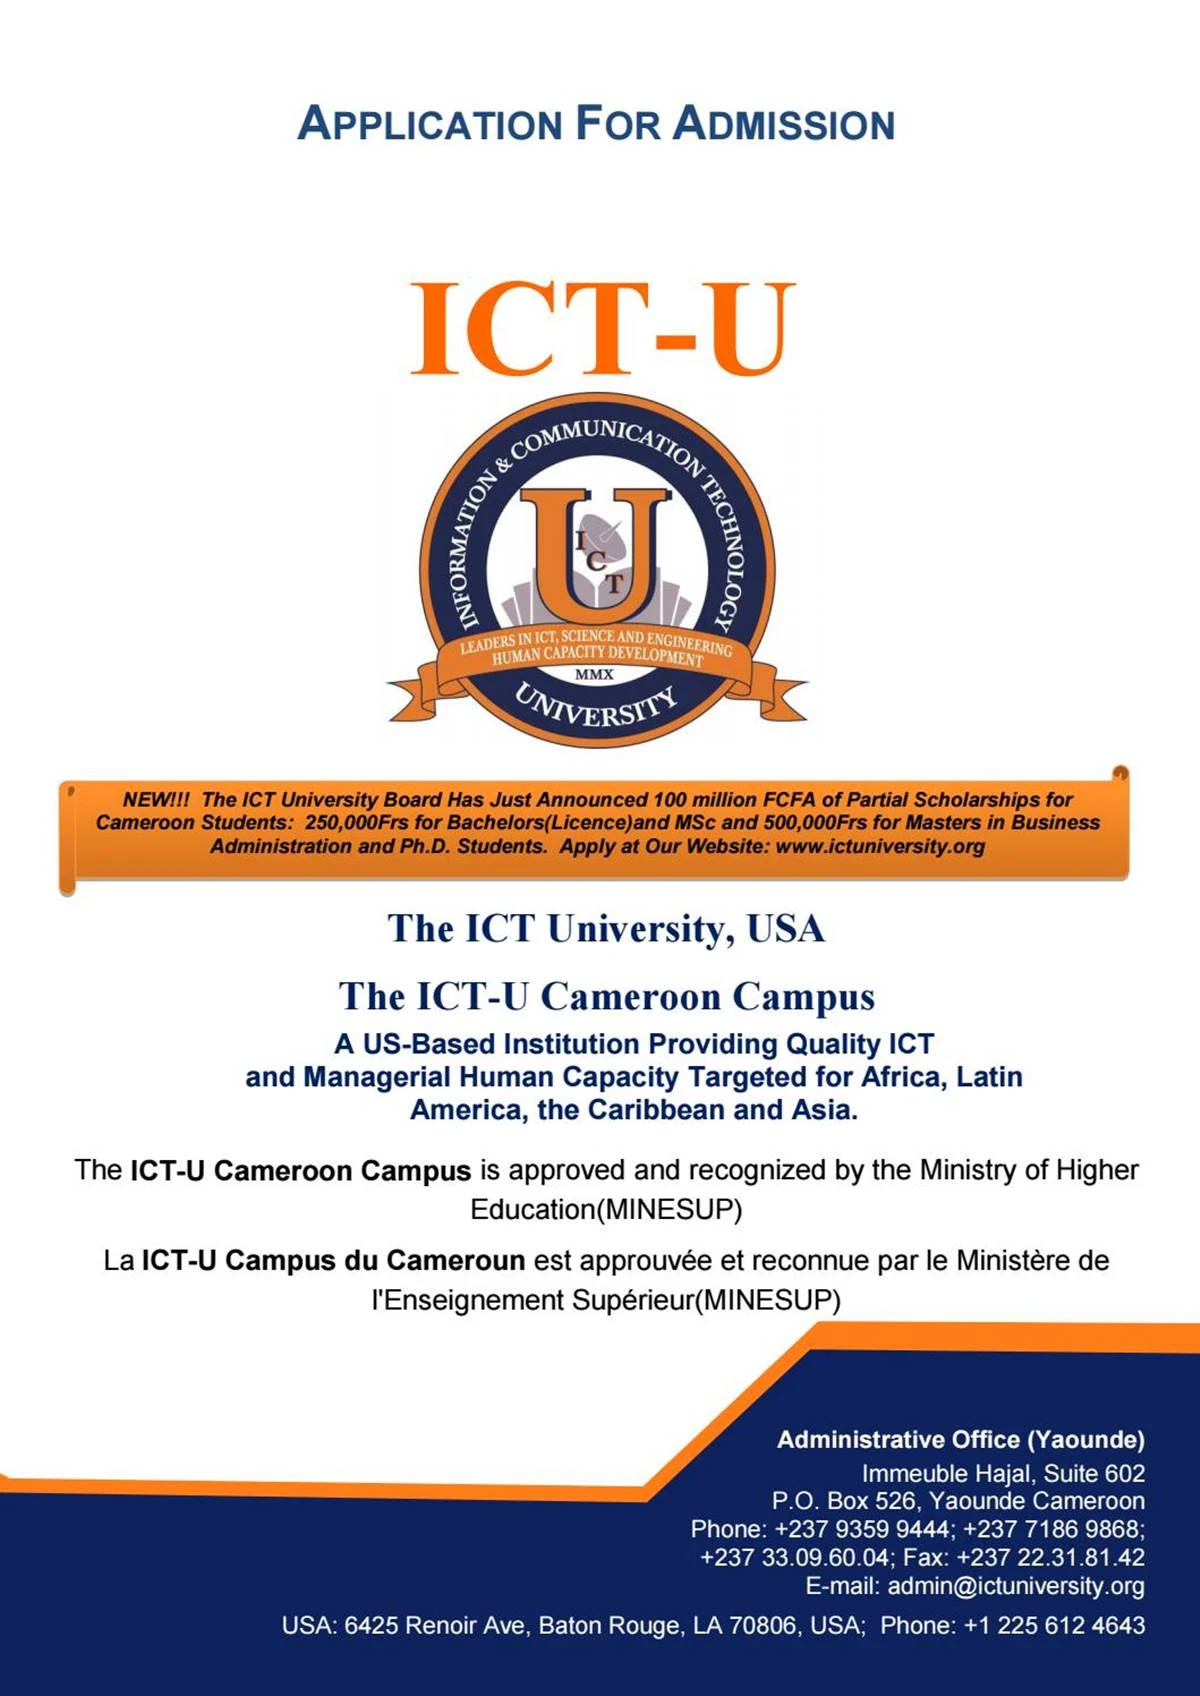 ICT University